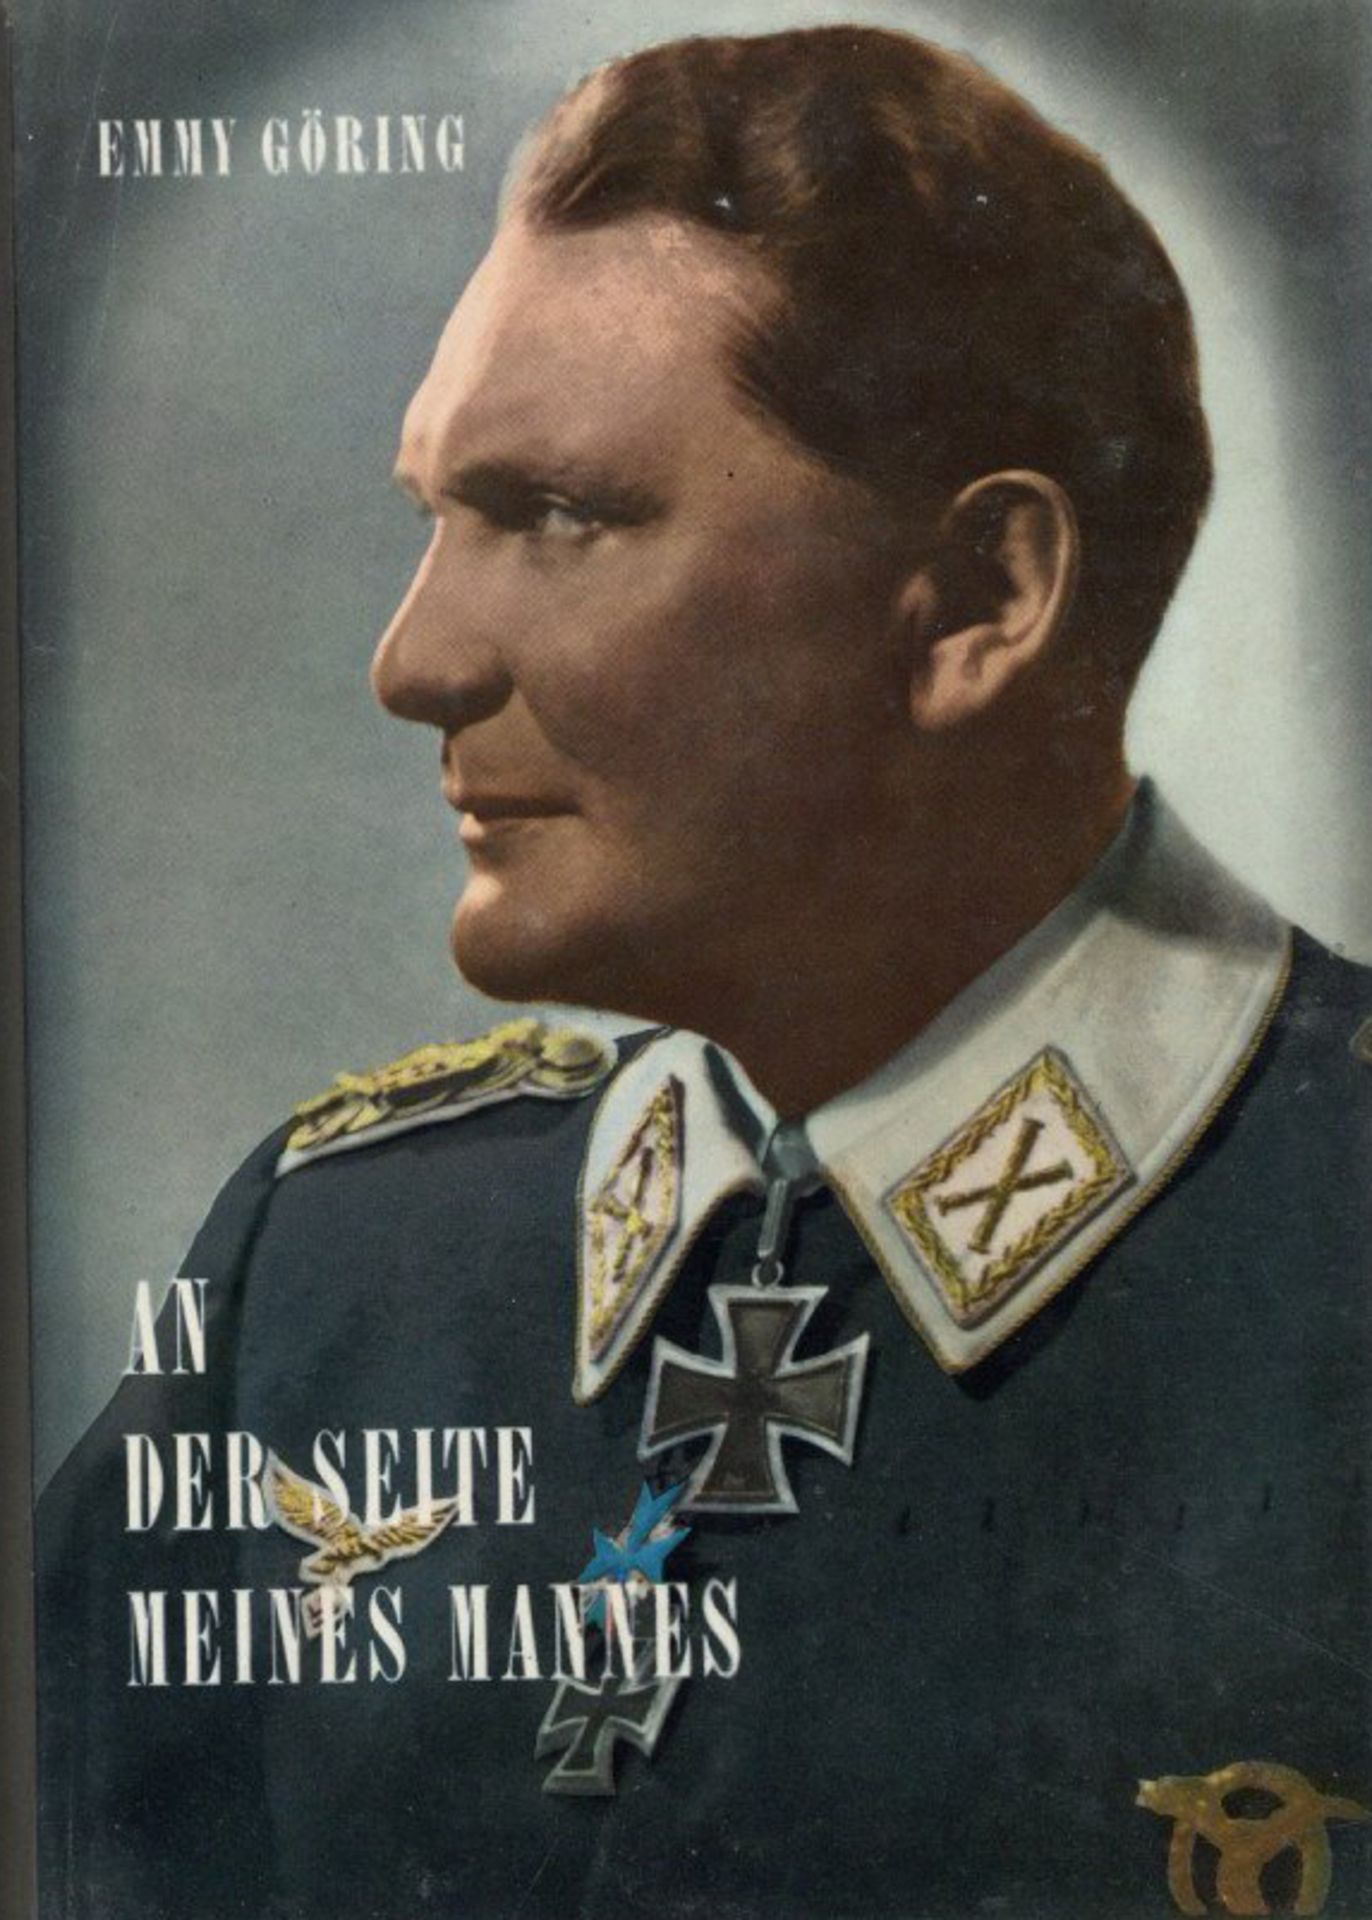 Buch WK II An der Seite meines Mannes von Göring, Emmy 1967, Verlag Schütz Göttingen, mit Original-